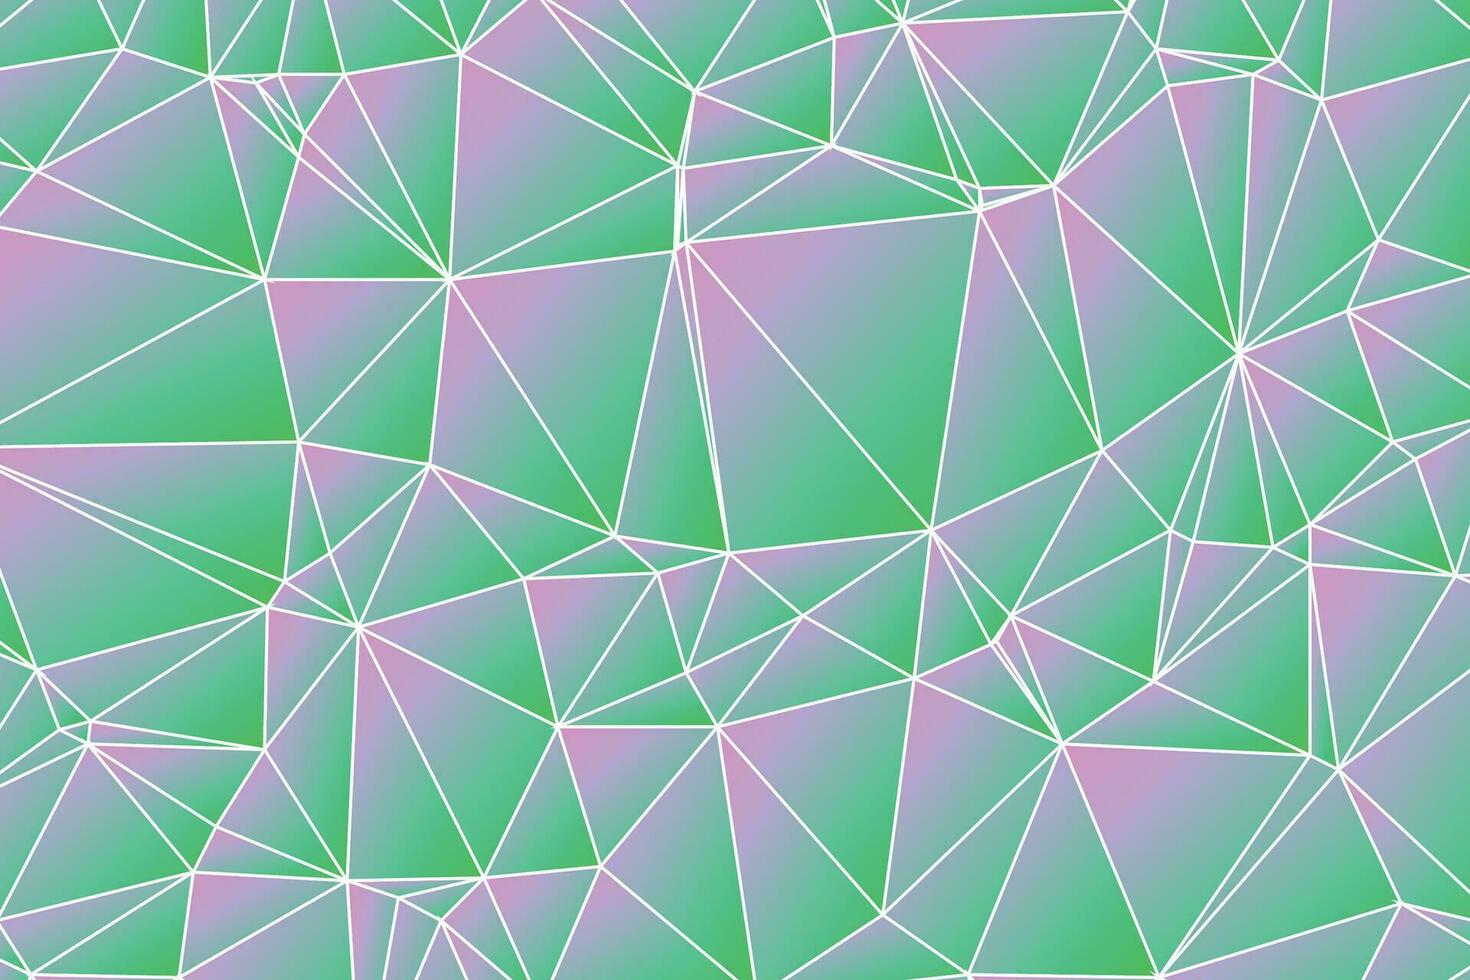 abstrakt Polygon künstlerisch geometrisch mit Weiß Linie Hintergrund. bunt niedrig poly Textur. vektor